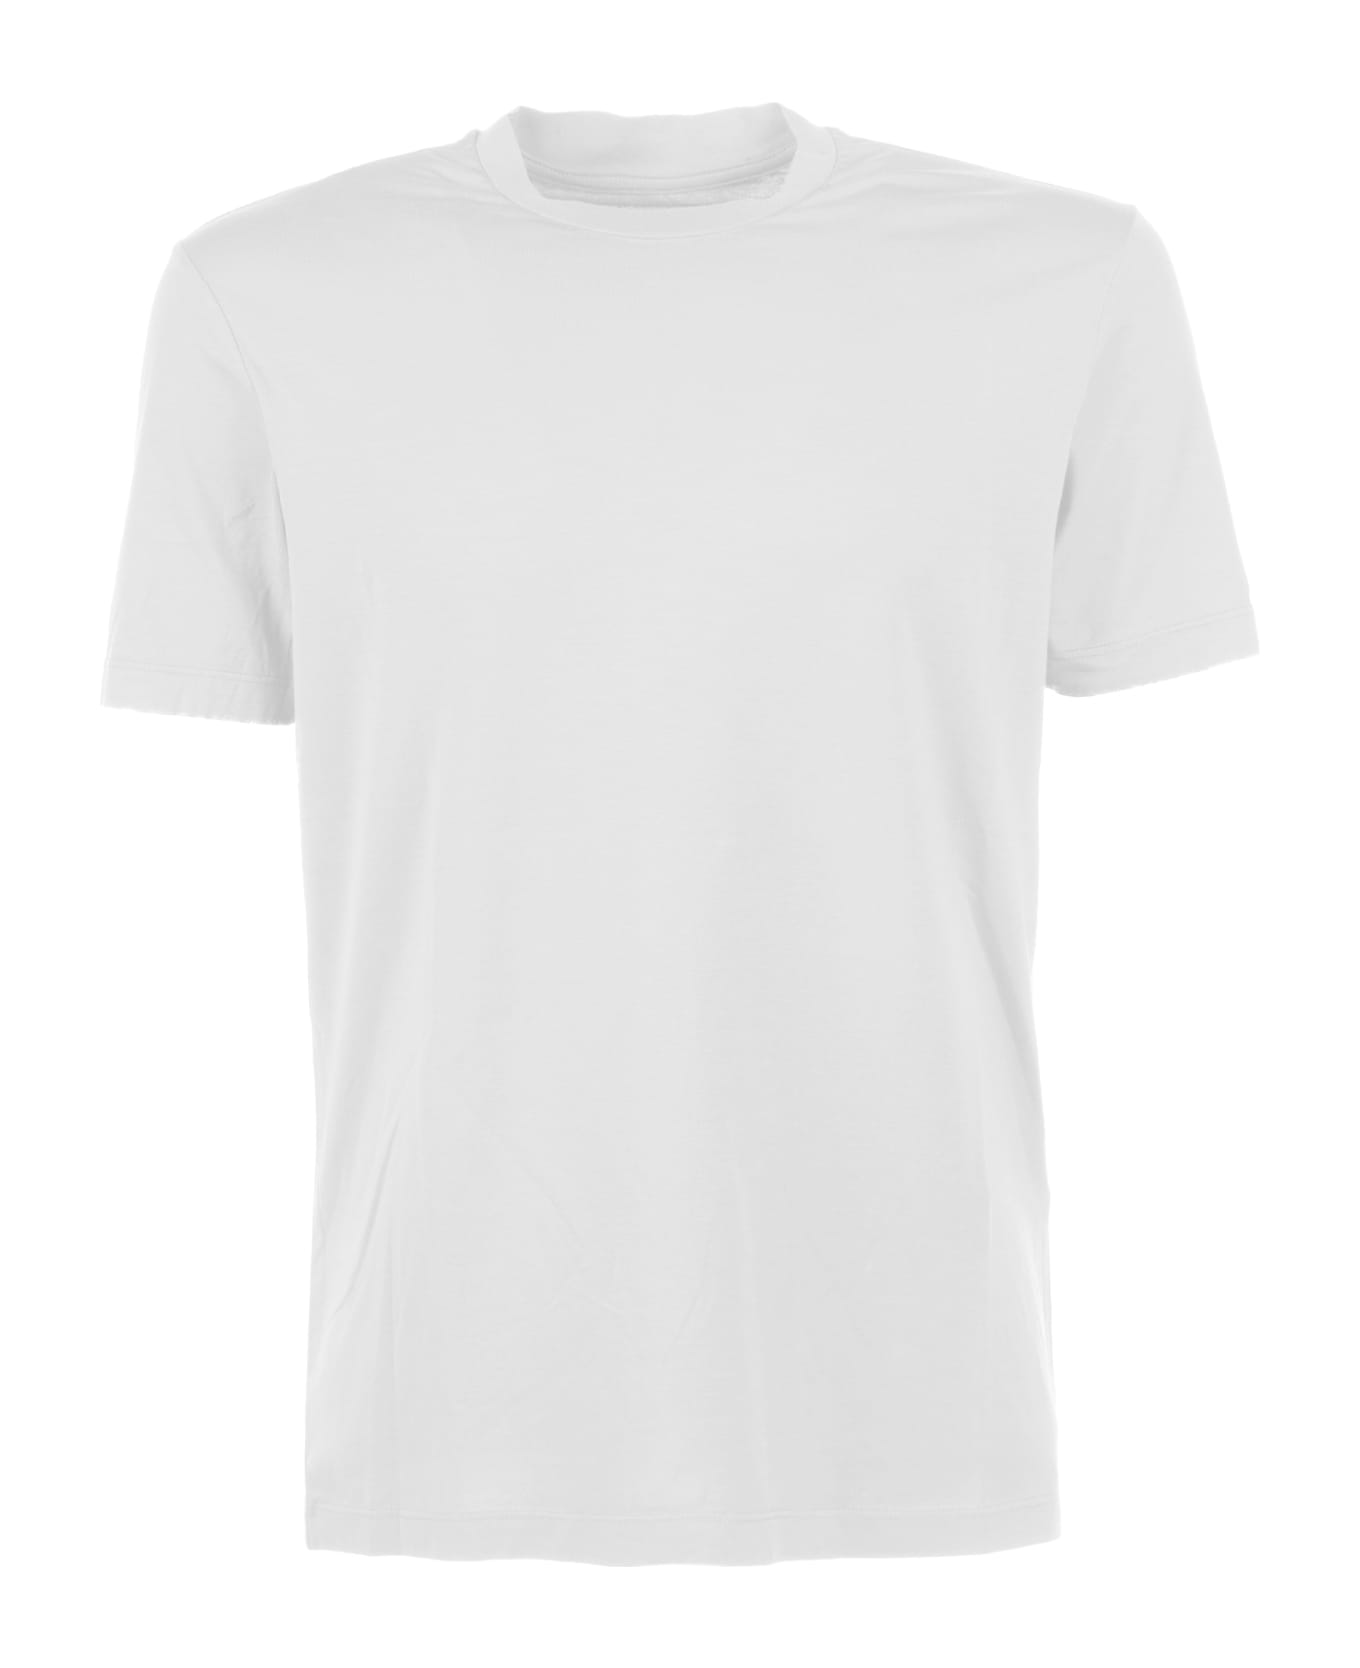 Altea White Cotton T-shirt - BIANCO OTTICO